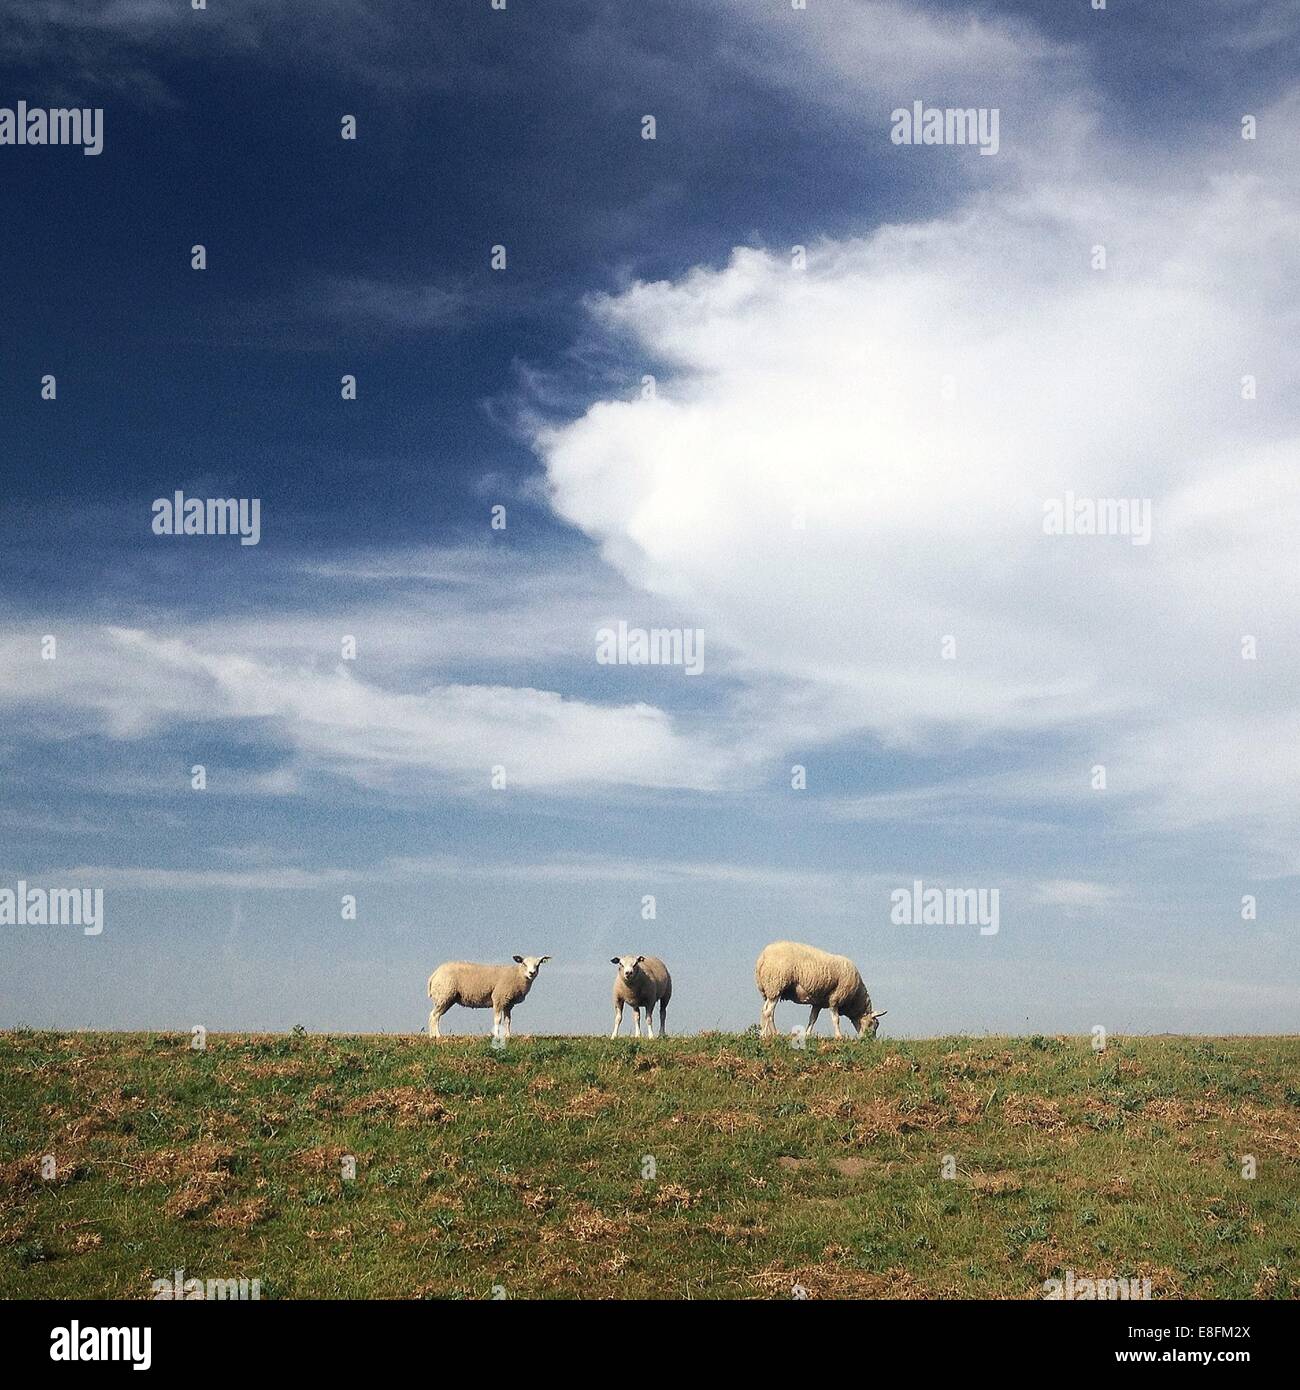 Three sheep grazing on pasture Stock Photo